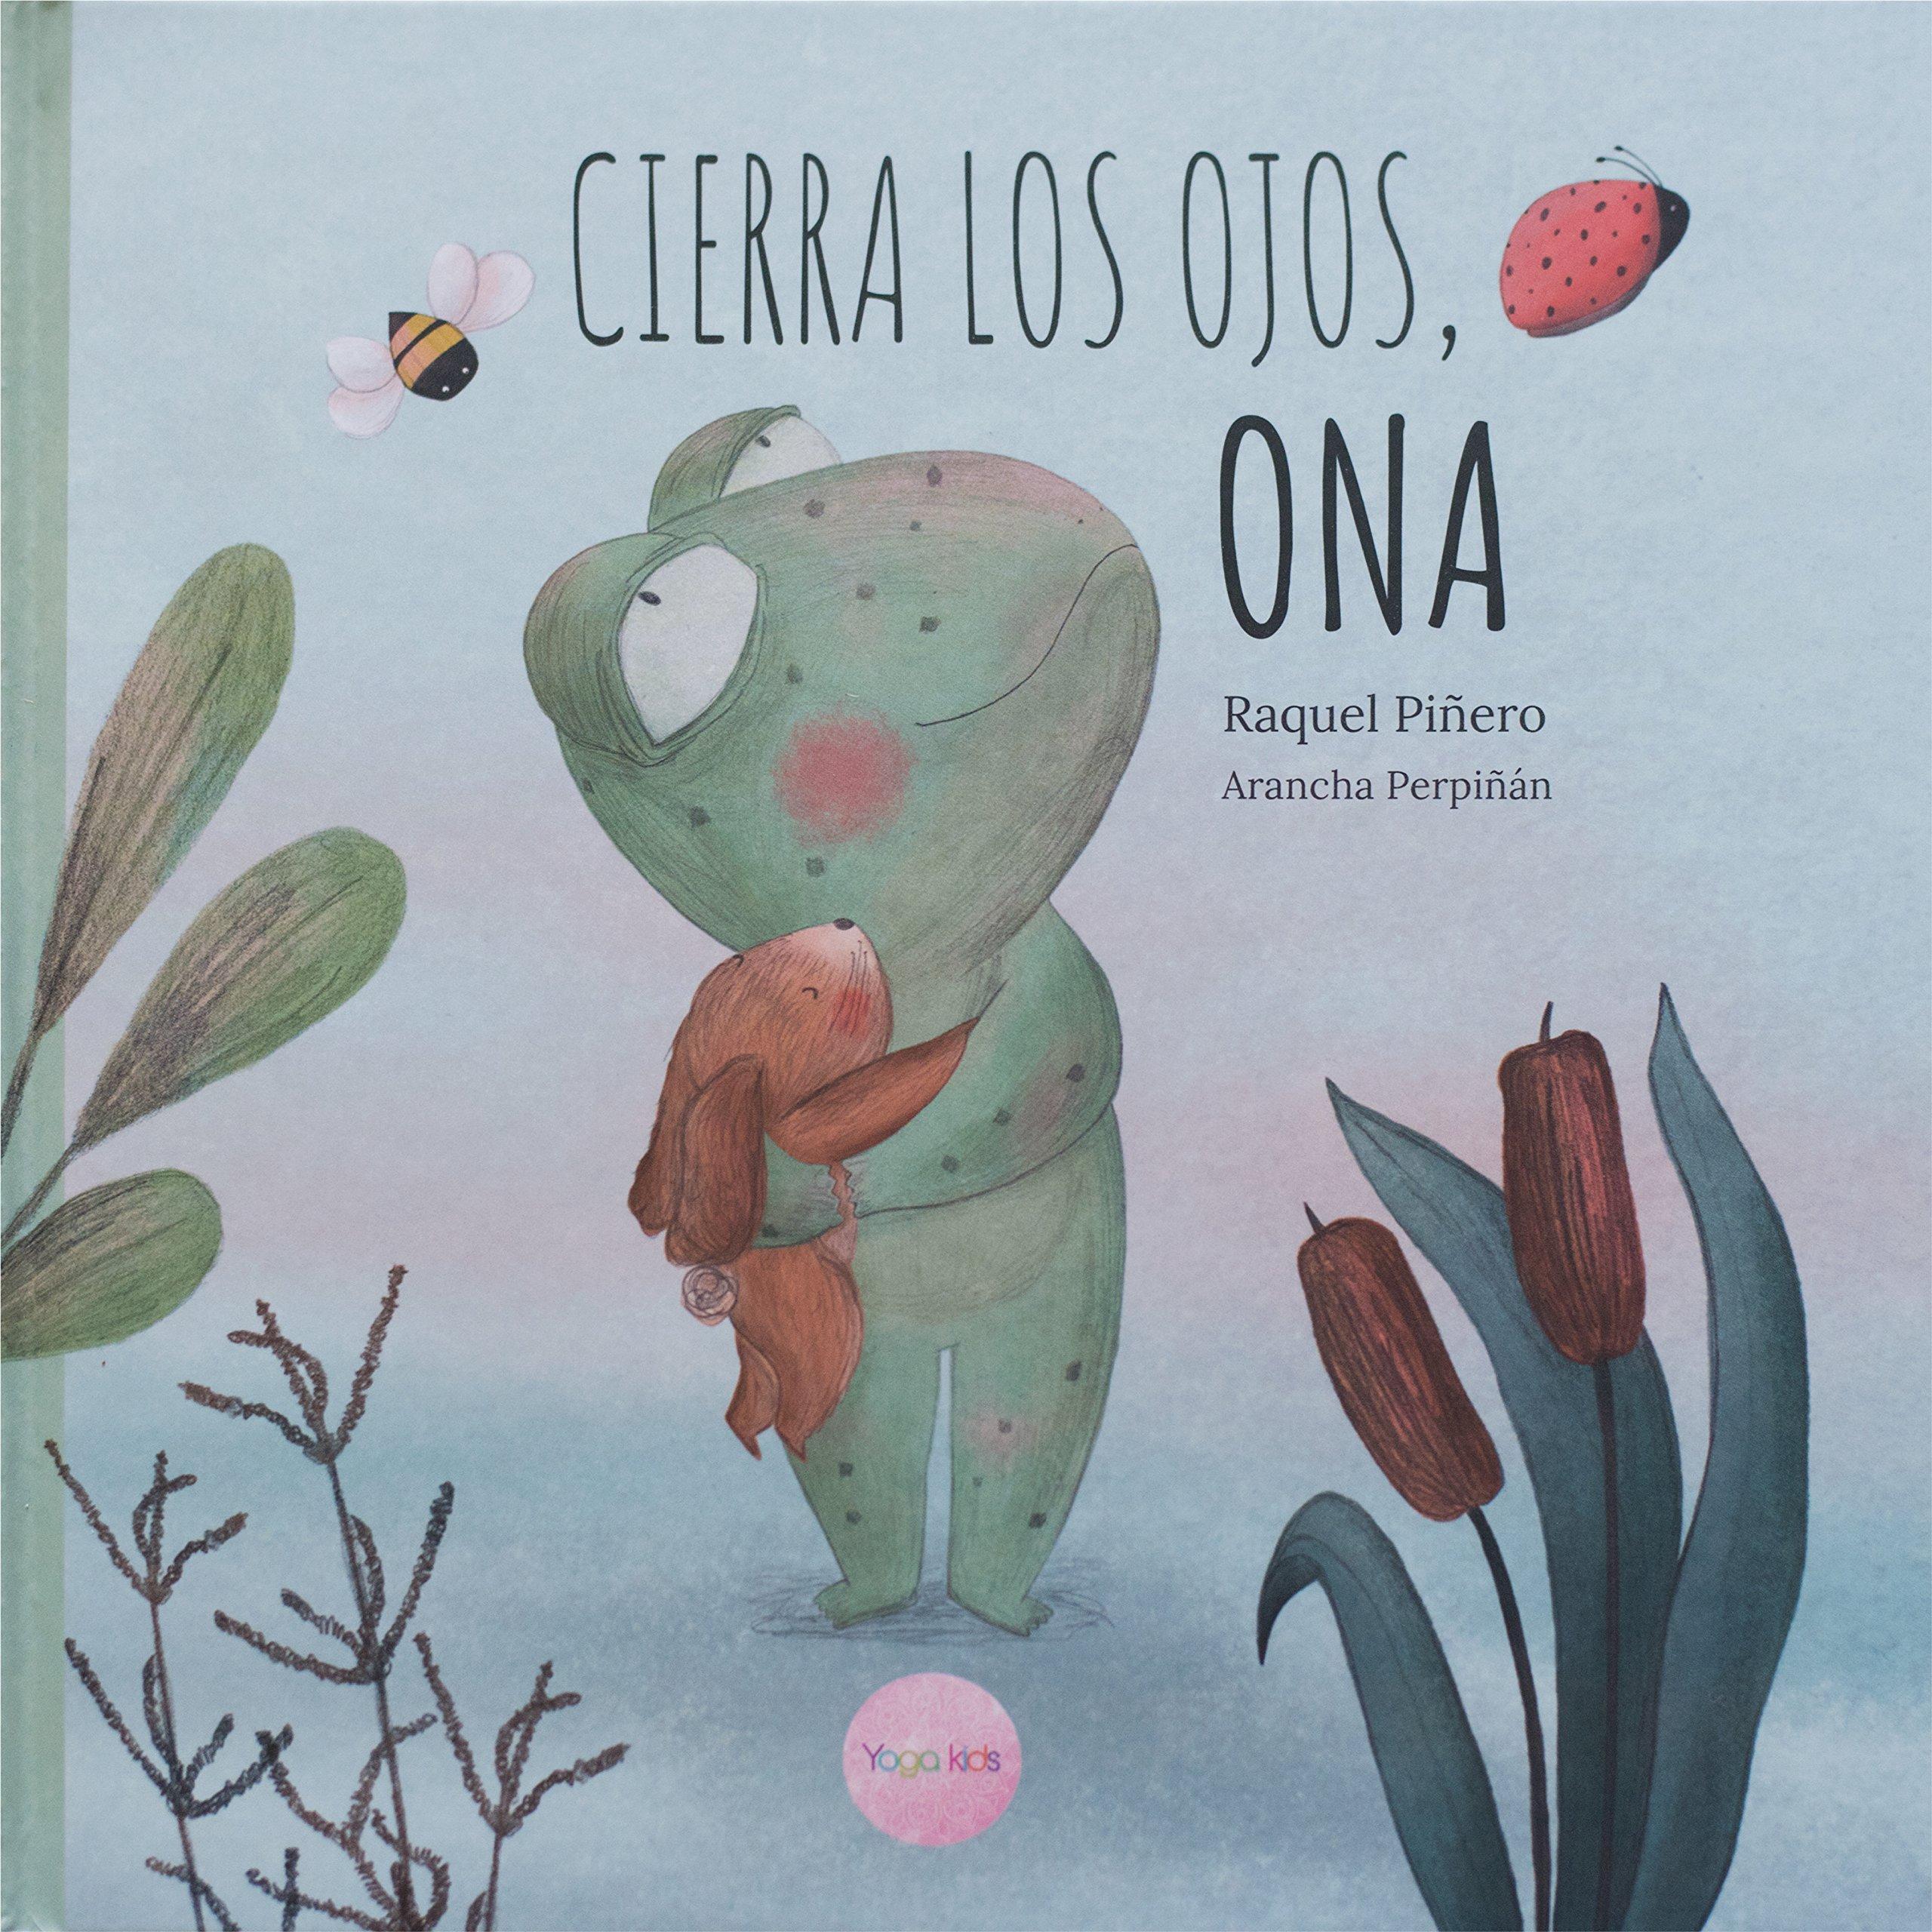 Recomendaciones cuentos infantiles Sant Jordi - Raquel Piñero - Cierra los ojos, Ona